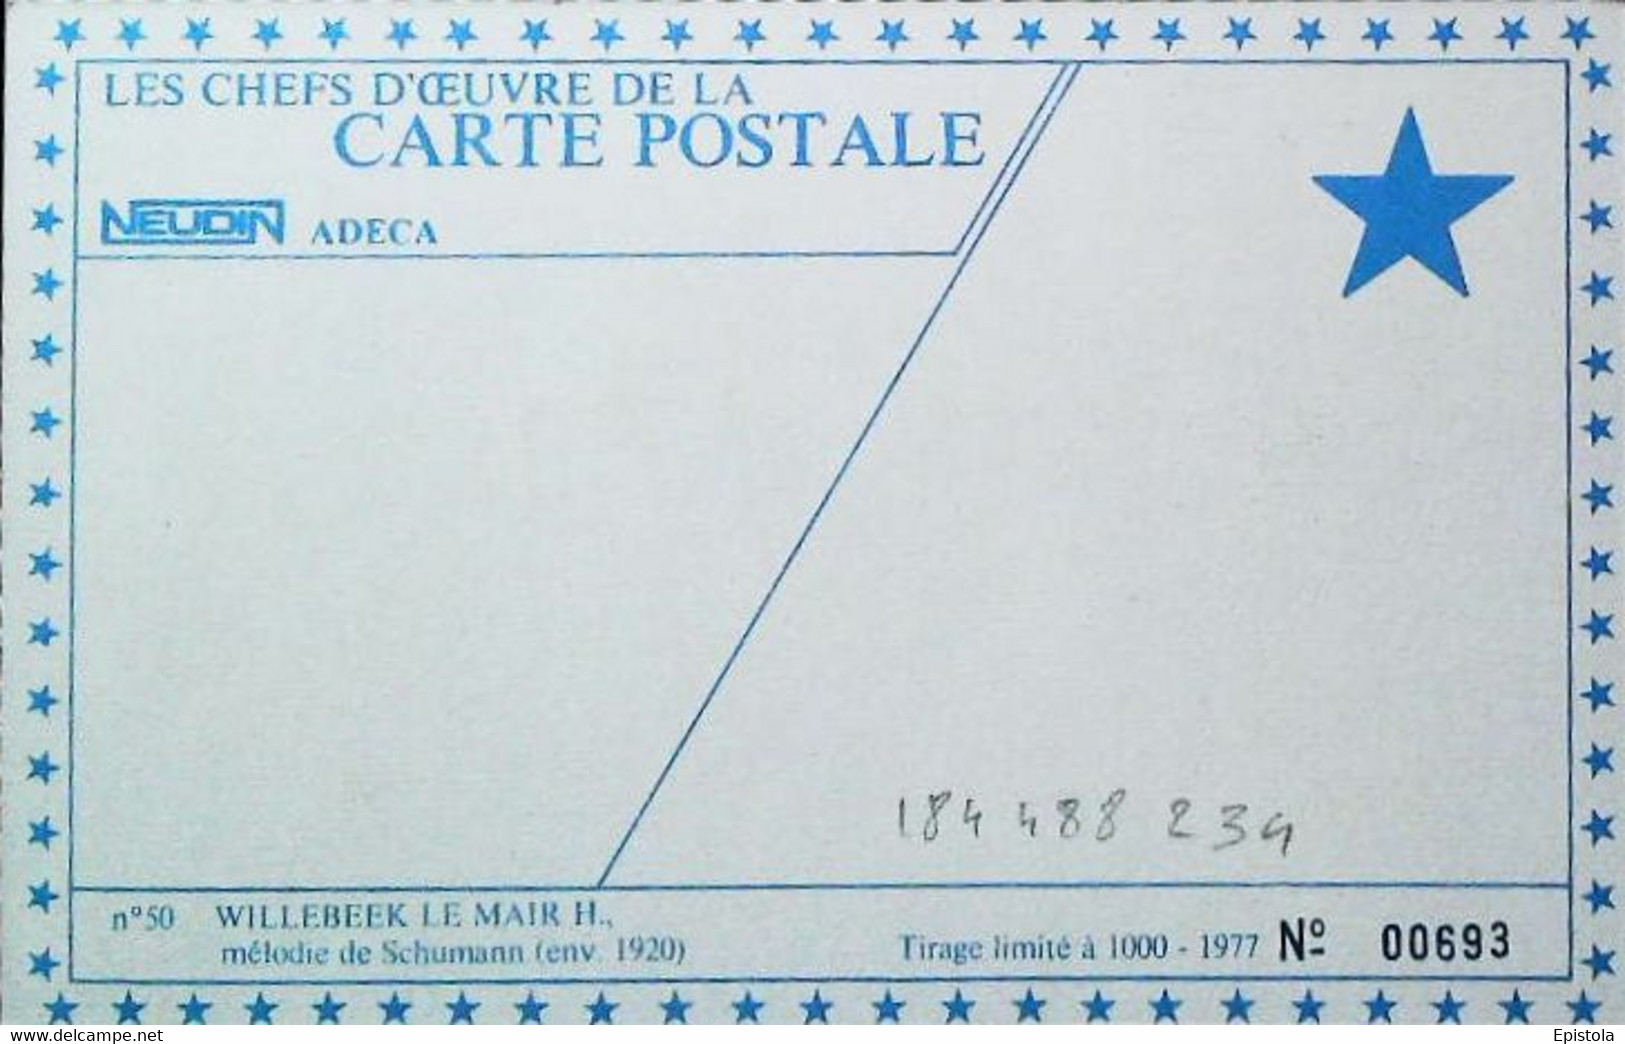 Les Chefs D'oeuvre De La Carte Postale NEUDIN, ADECA, Tirage Limité 1000ex 1977  LE MAIR   Mélodie Schumann Flûte - Le Mair